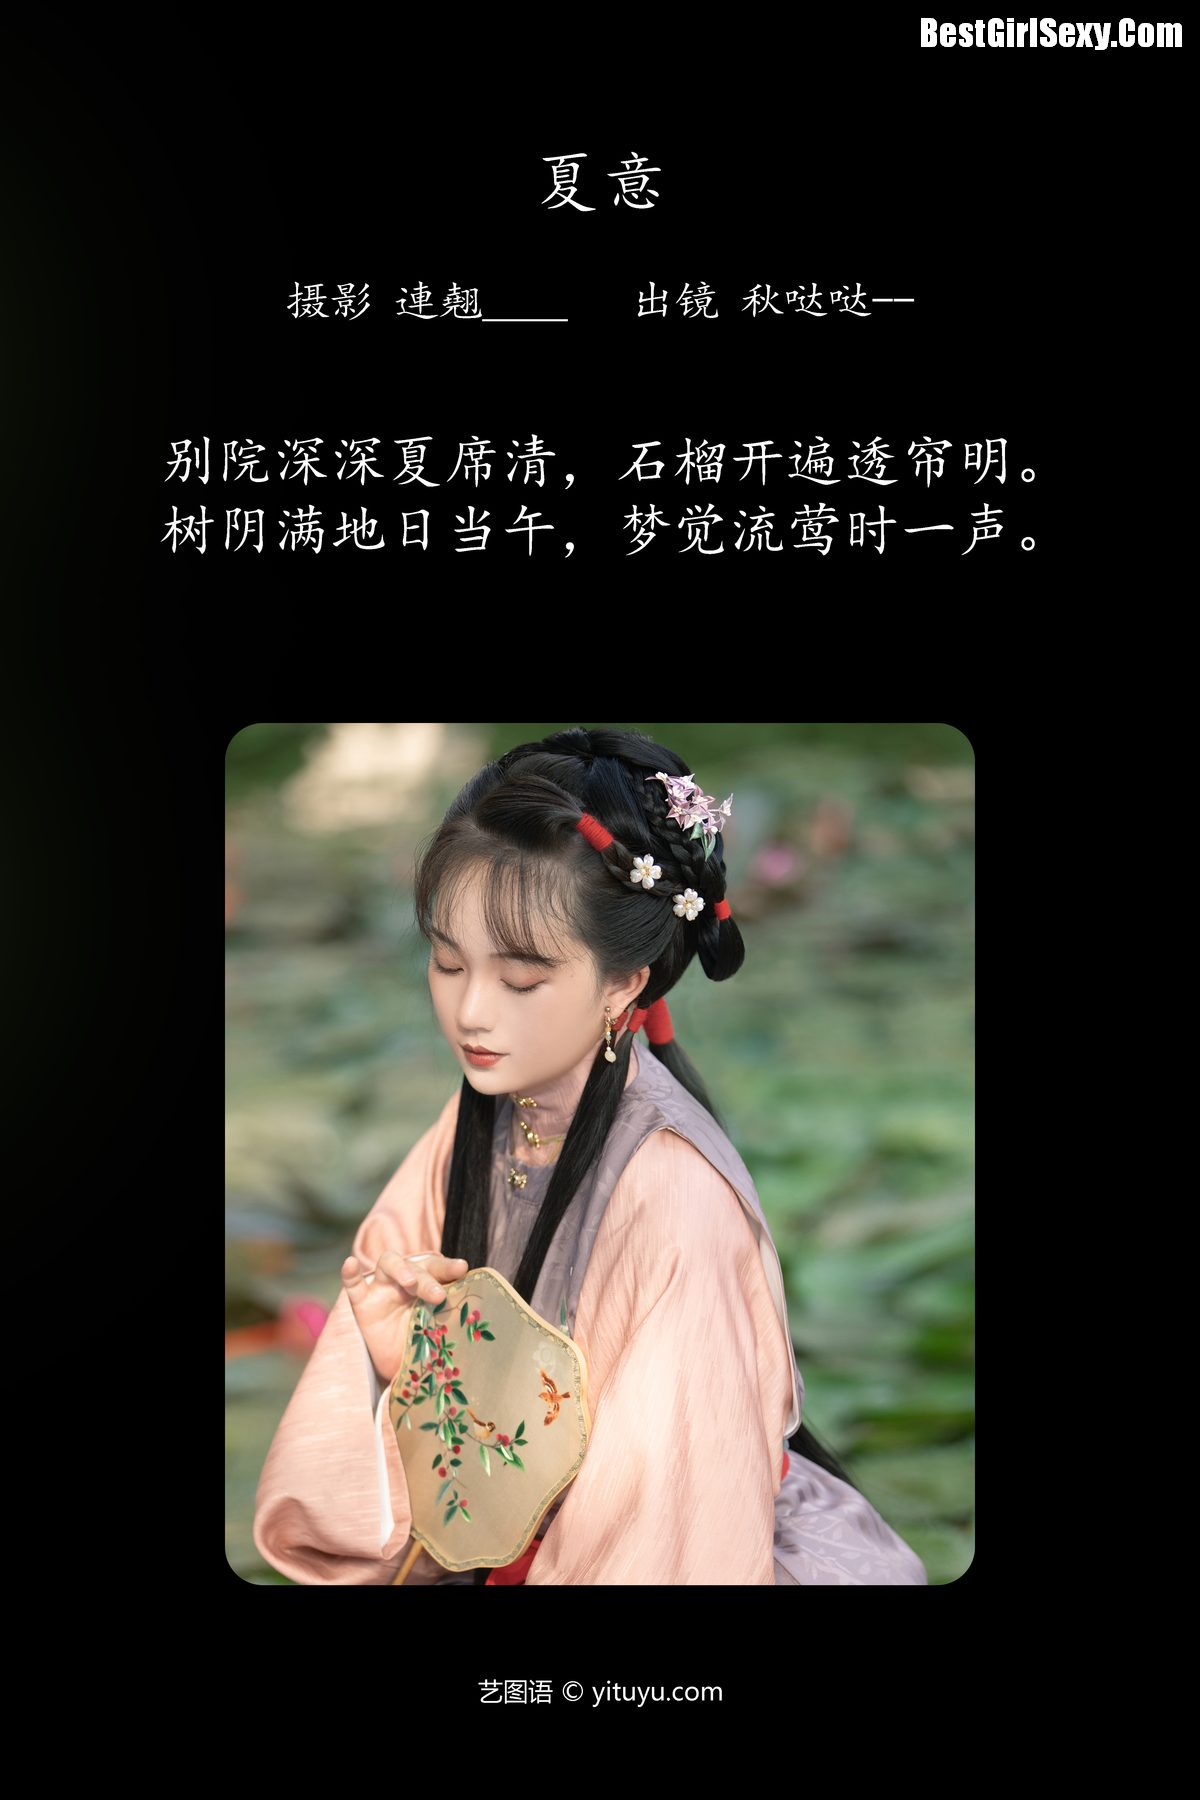 YiTuYu艺图语 Vol 4072 Qiu Da Da 0002 6489570513.jpg